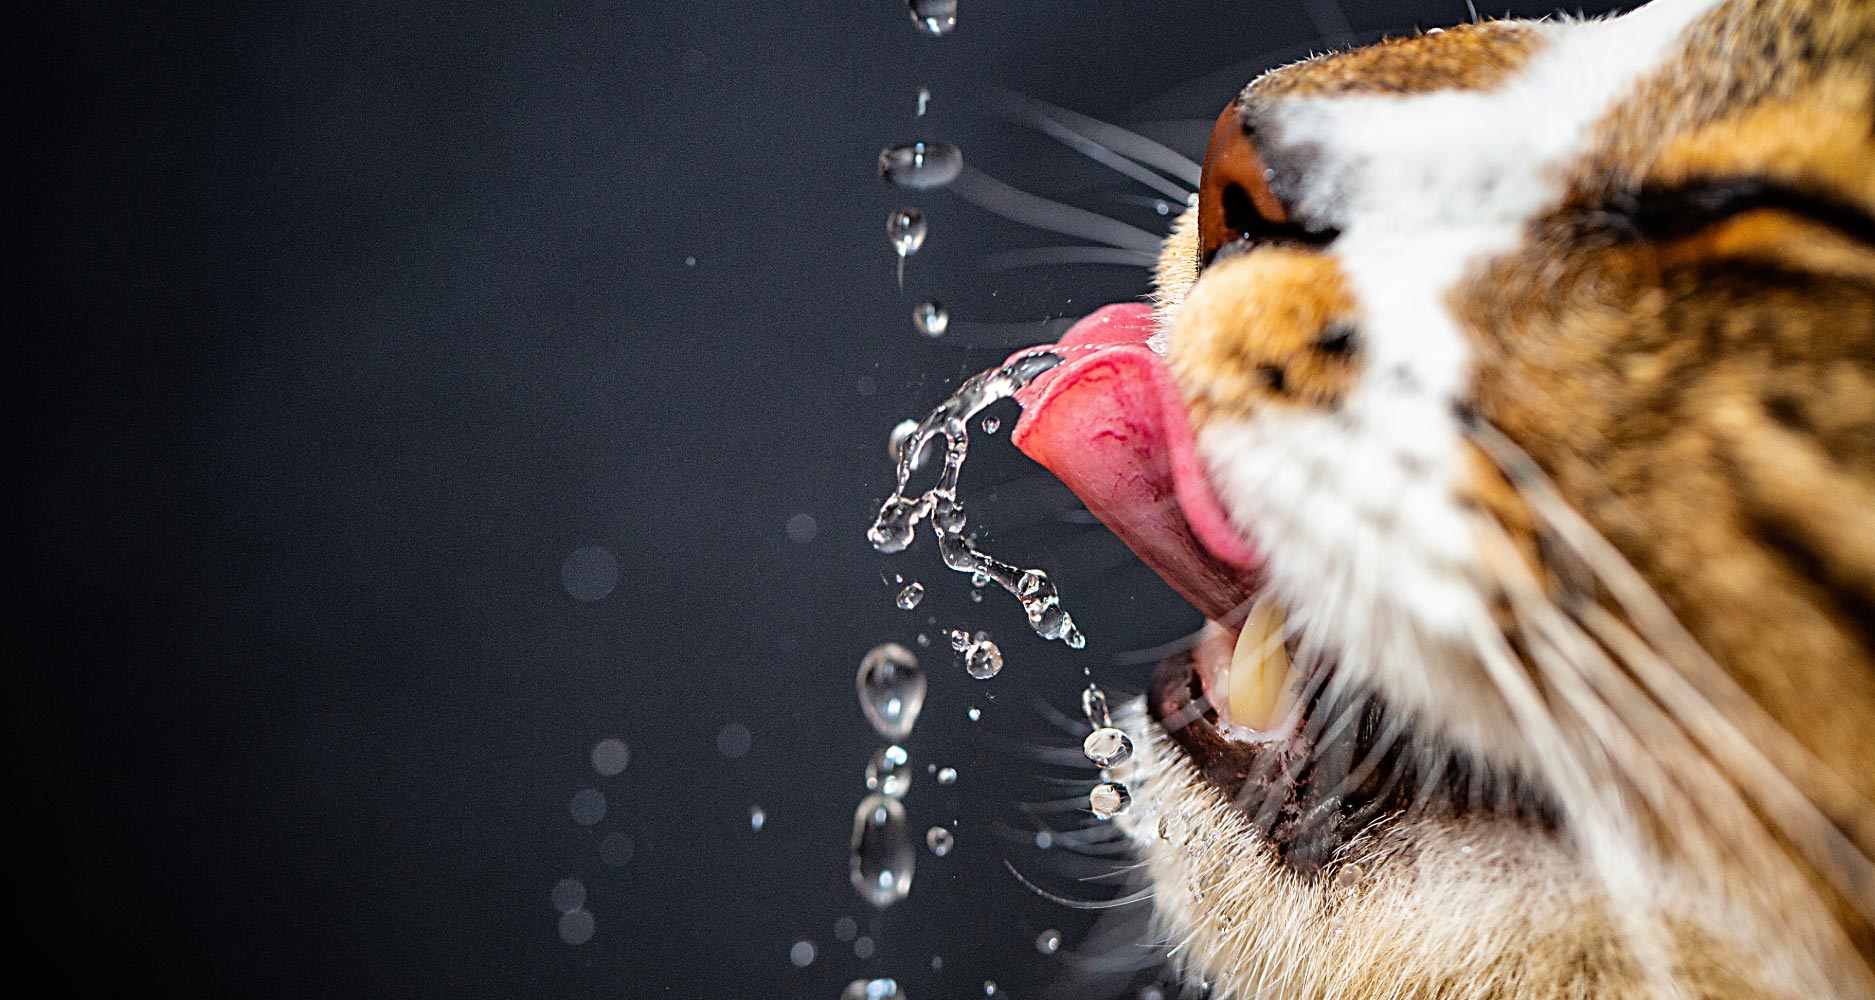 su damlalarına dilini uzatan kedi